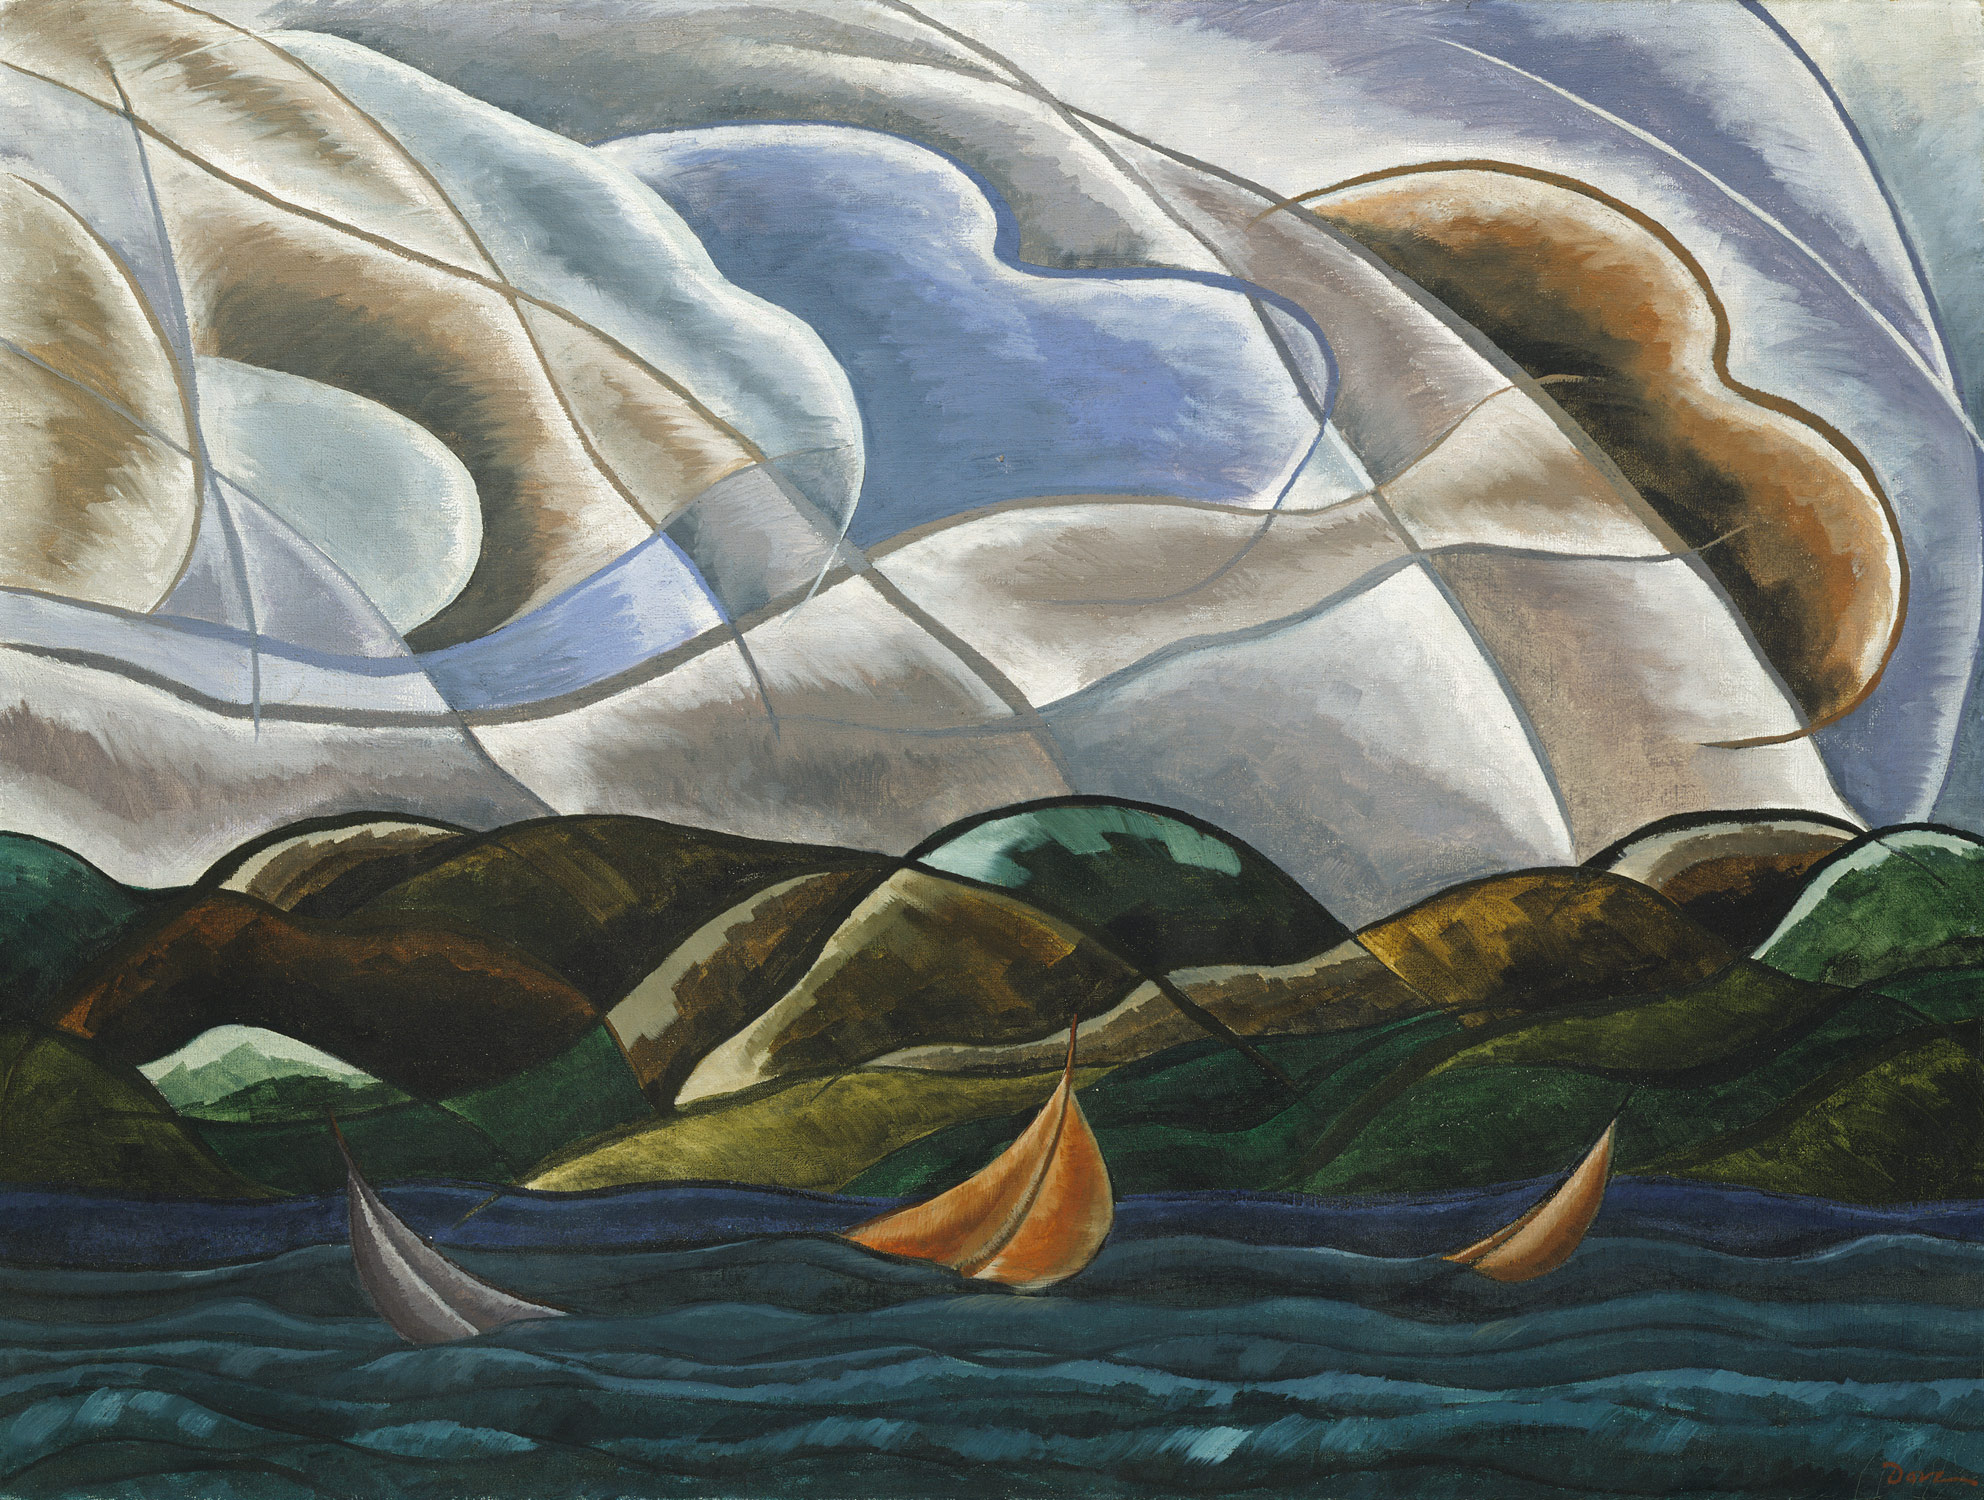 Nubes y agua by Arthur Dove - 1930 - 75.2 x 100.6 cm Museo Metropolitano de Arte